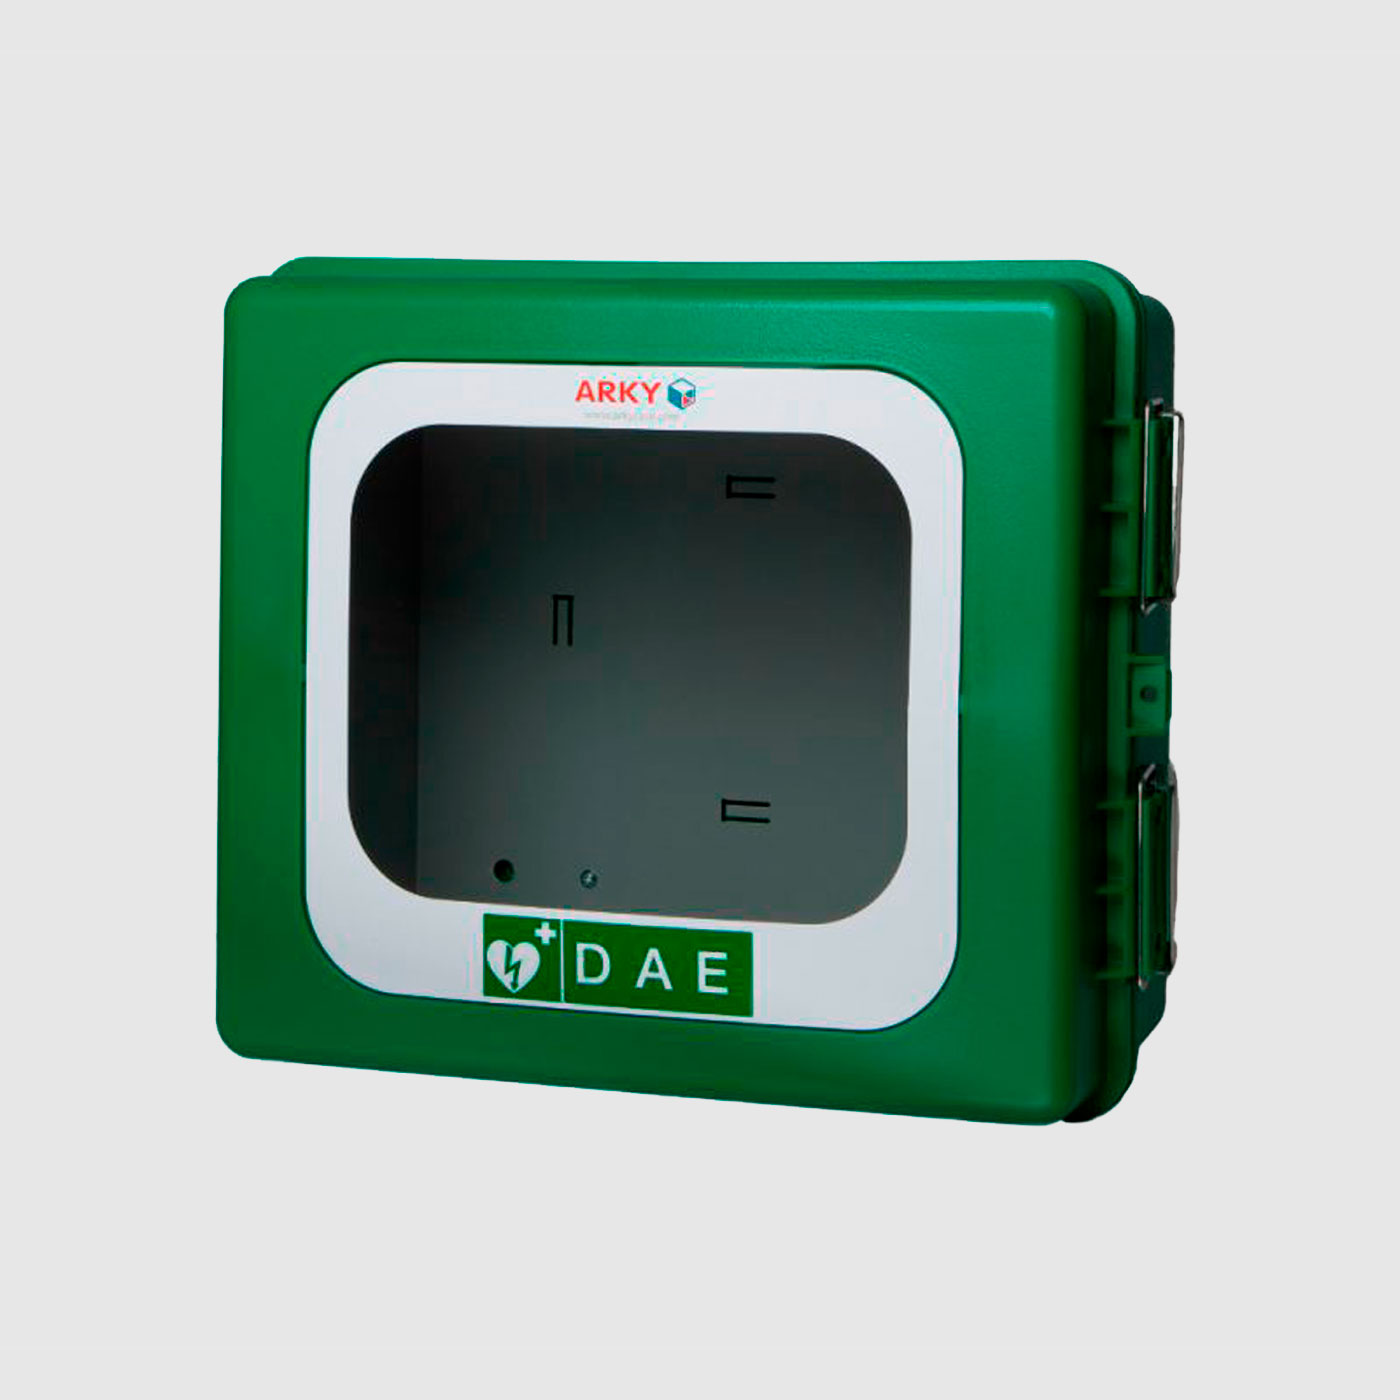 Gabinete DEA – ARKY 60212 Polietileno verde con alarma